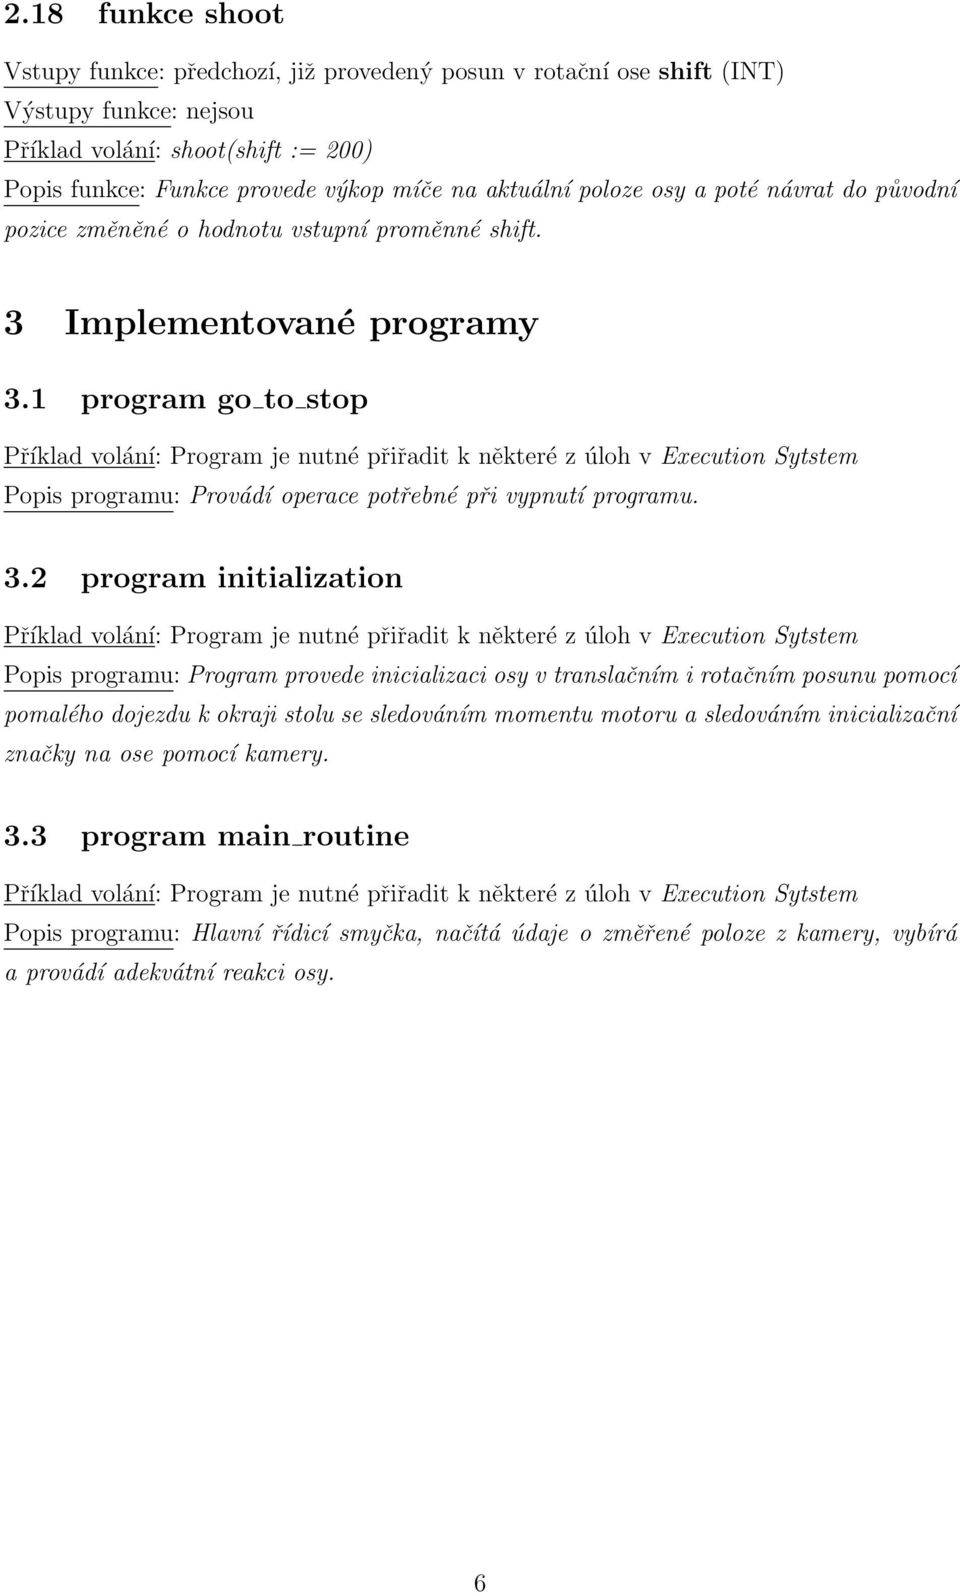 1 program go to stop Příklad volání: Program je nutné přiřadit k některé z úloh v Execution Sytstem Popis programu: Provádí operace potřebné při vypnutí programu. 3.